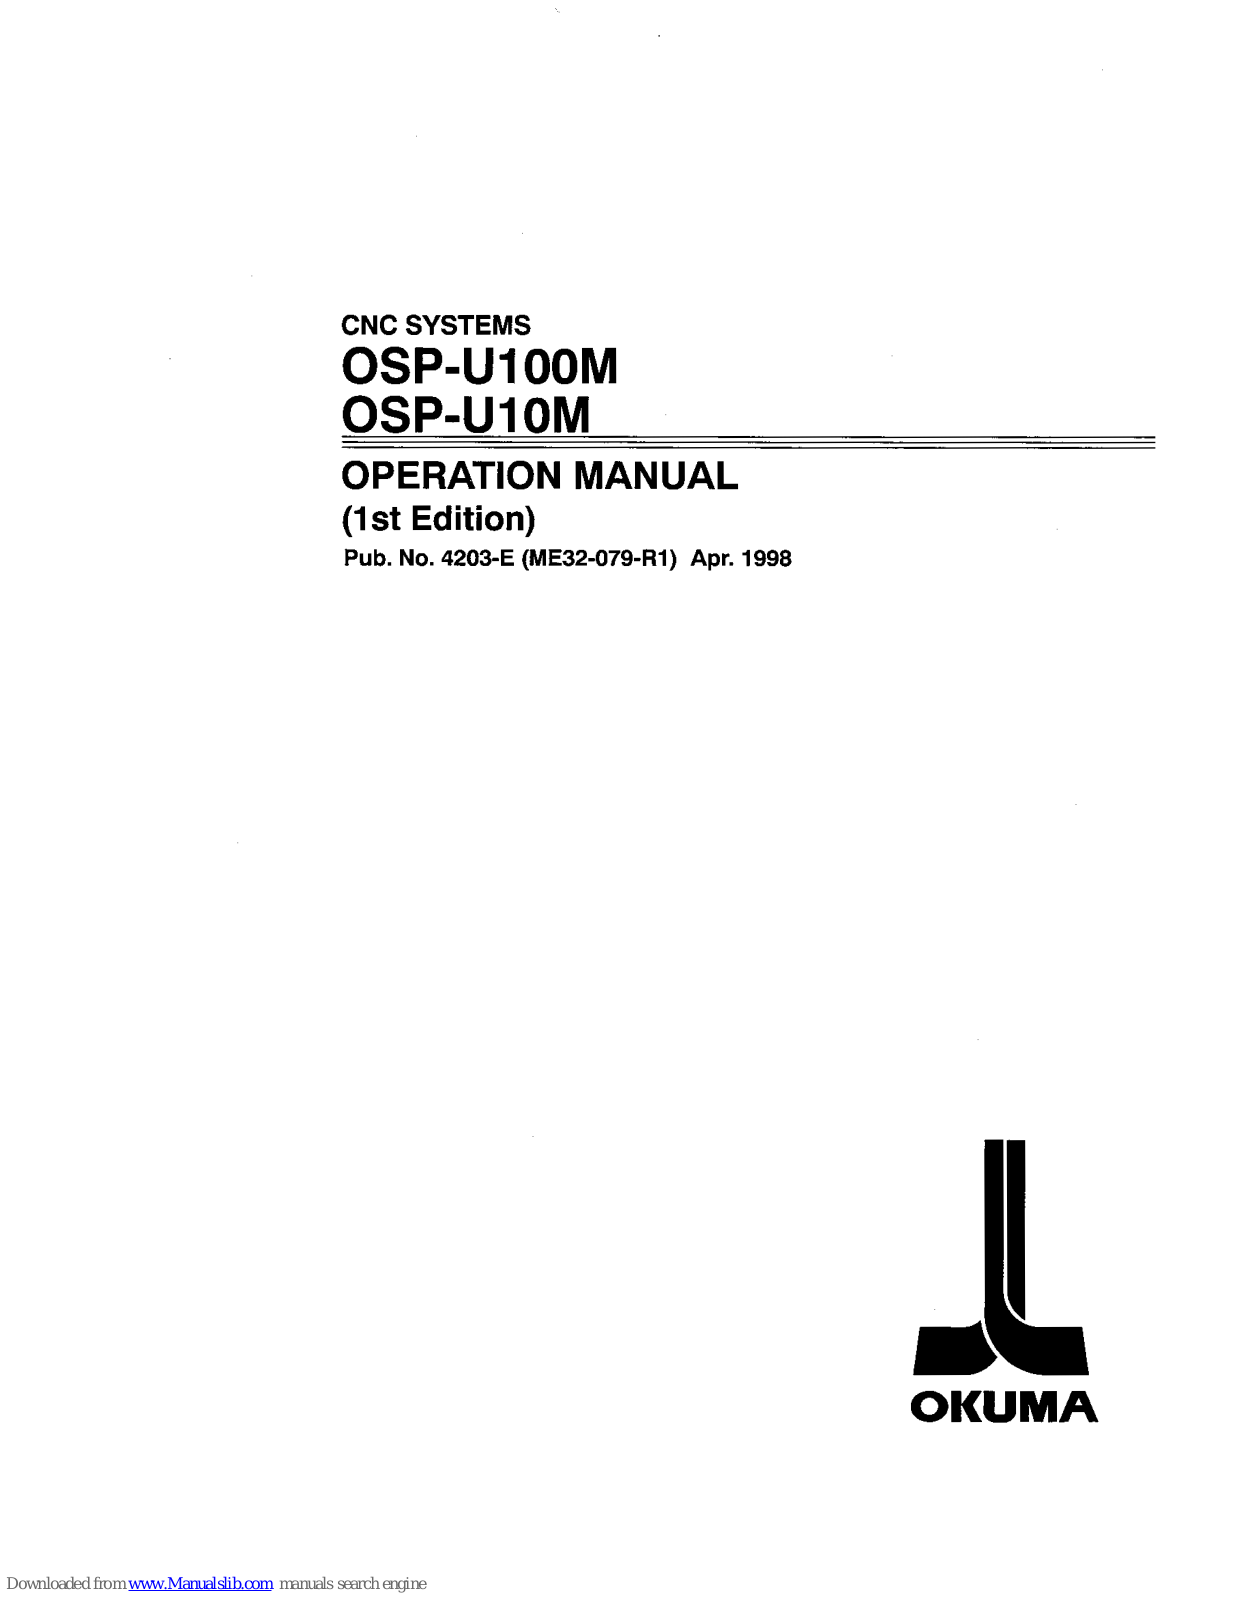 Okuma OSP-U100M, OSP-U10M Operation Manual